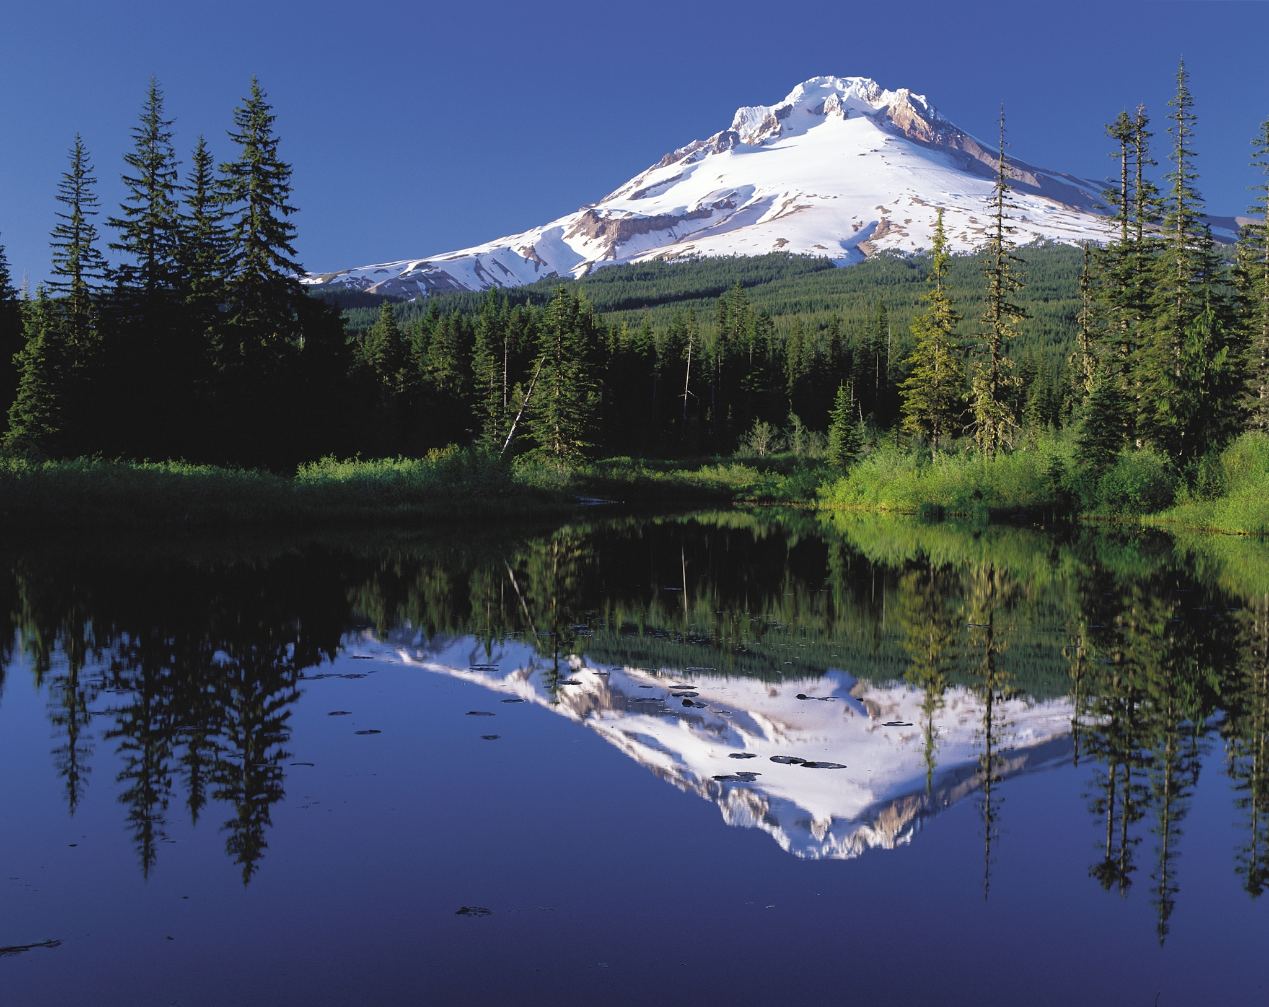 Mount-Hood-reflected-in-Mirror-Lake-2.jpg